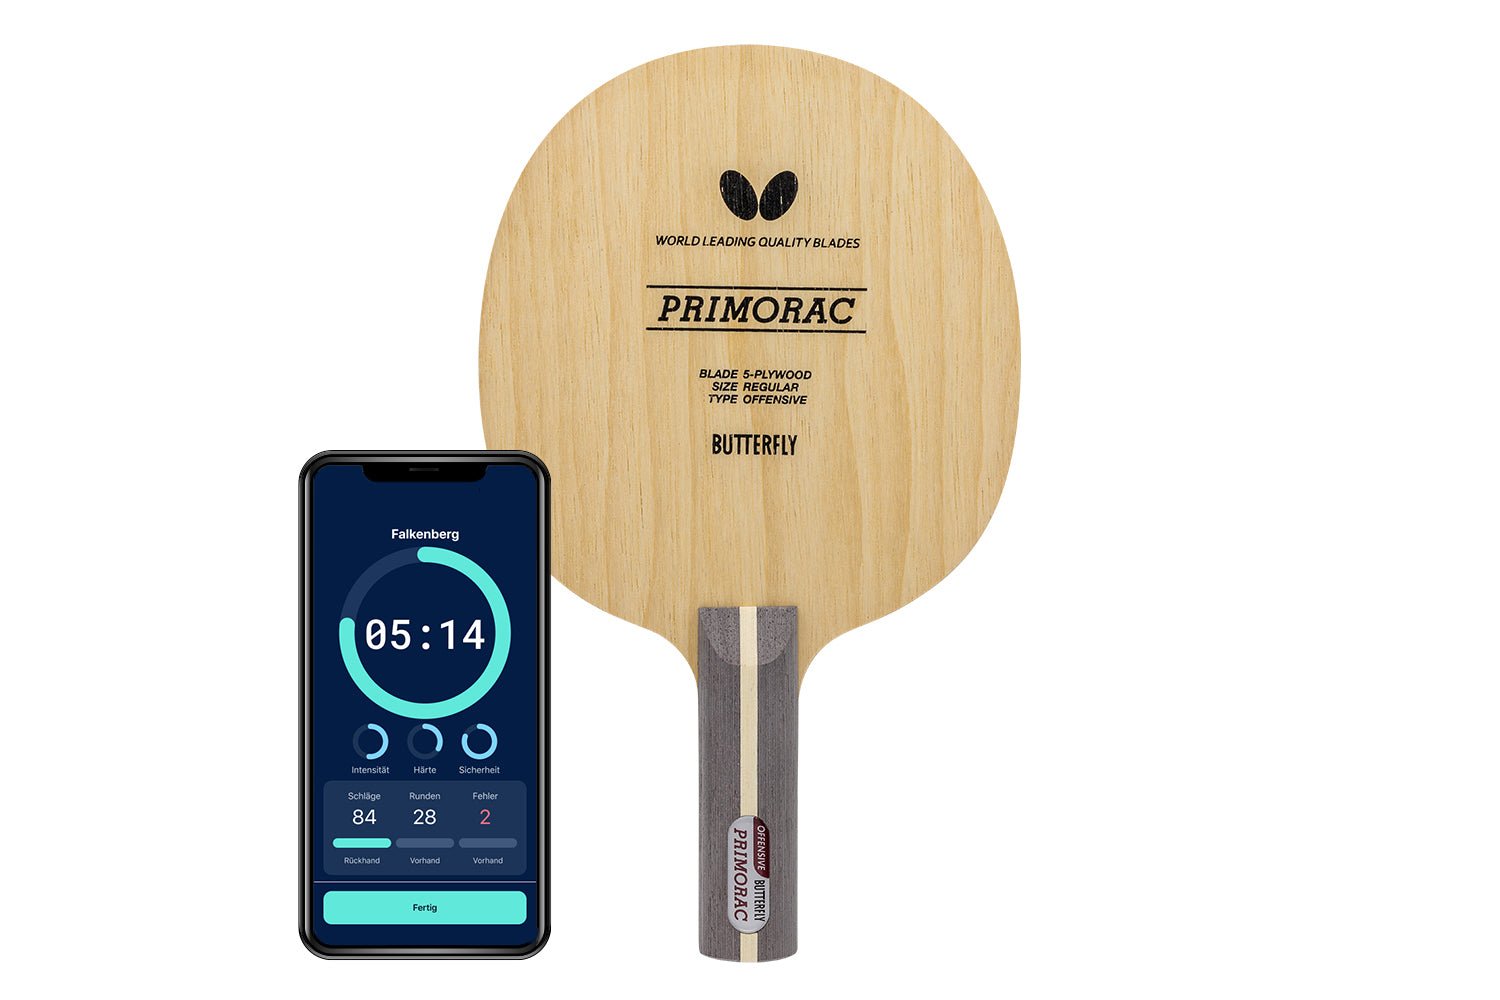 Butterfly Primorac Tischtennisschläger mit geradem Griff und Smartphone zeigt Daten des Schlägers vor weißem Hintergrund